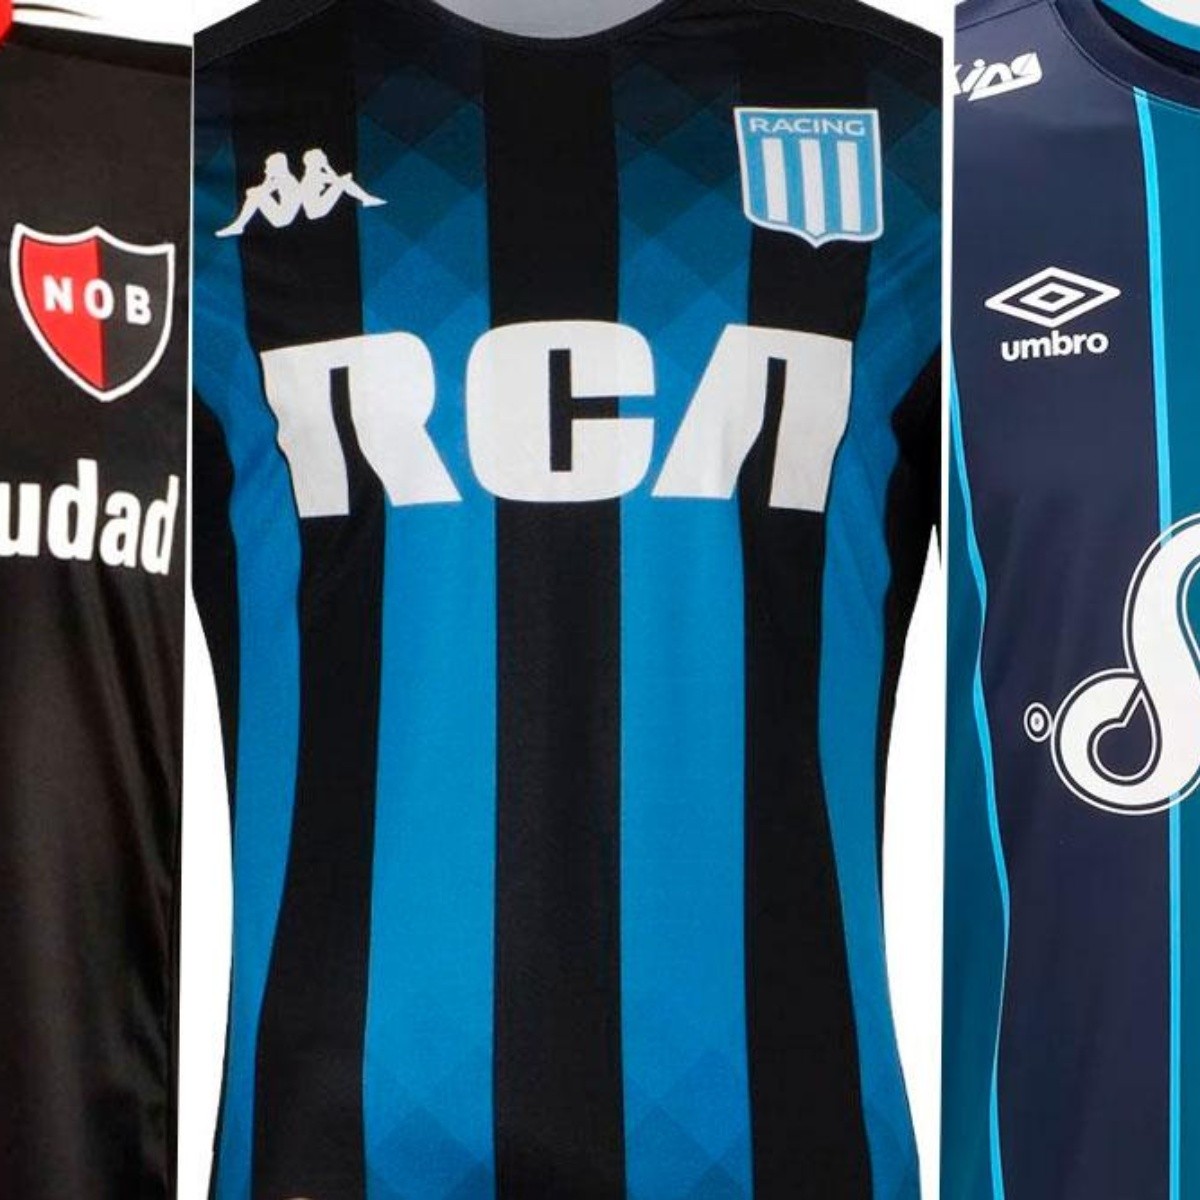 camisetas de futbol argentino 2019